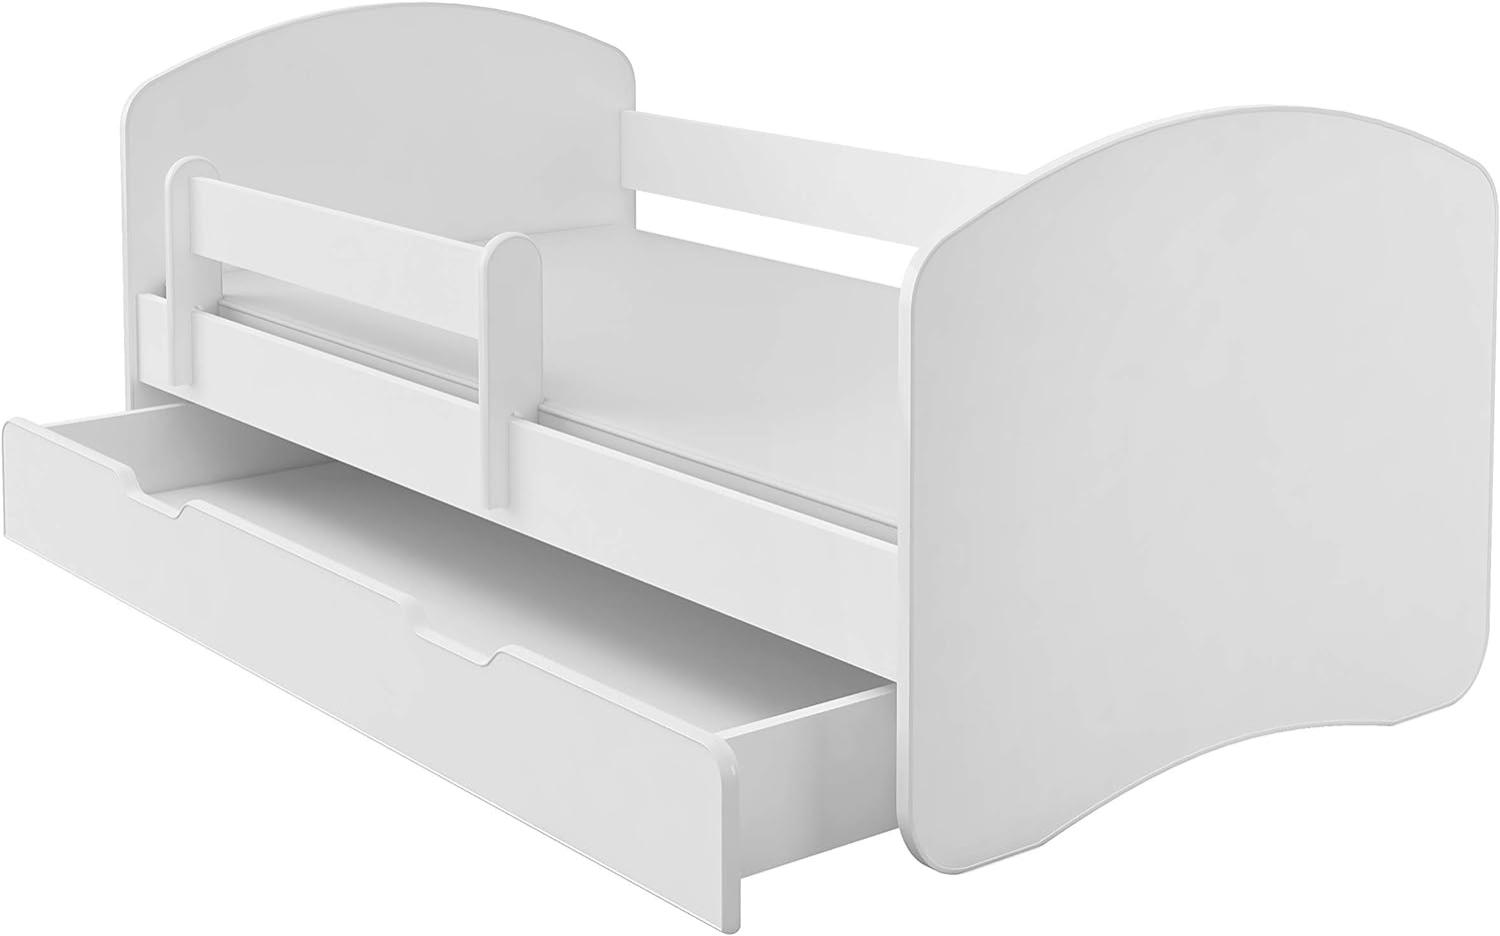 Kinderbett Jugendbett mit einer Schublade und Matratze Weiß ACMA II (180x80 cm + Schublade, Weiß) Bild 1